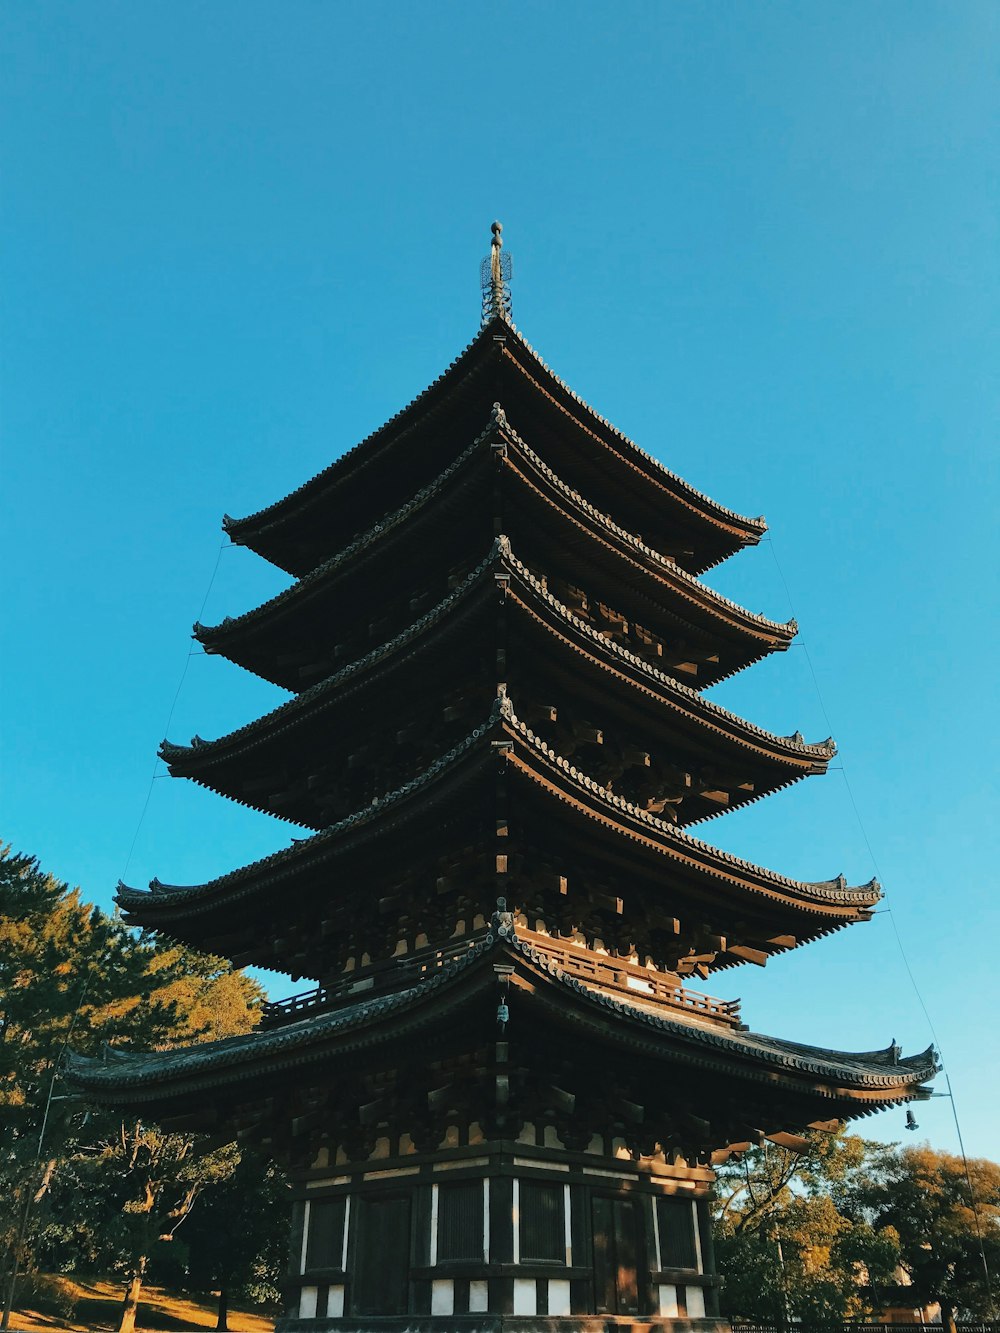 beige pagoda building